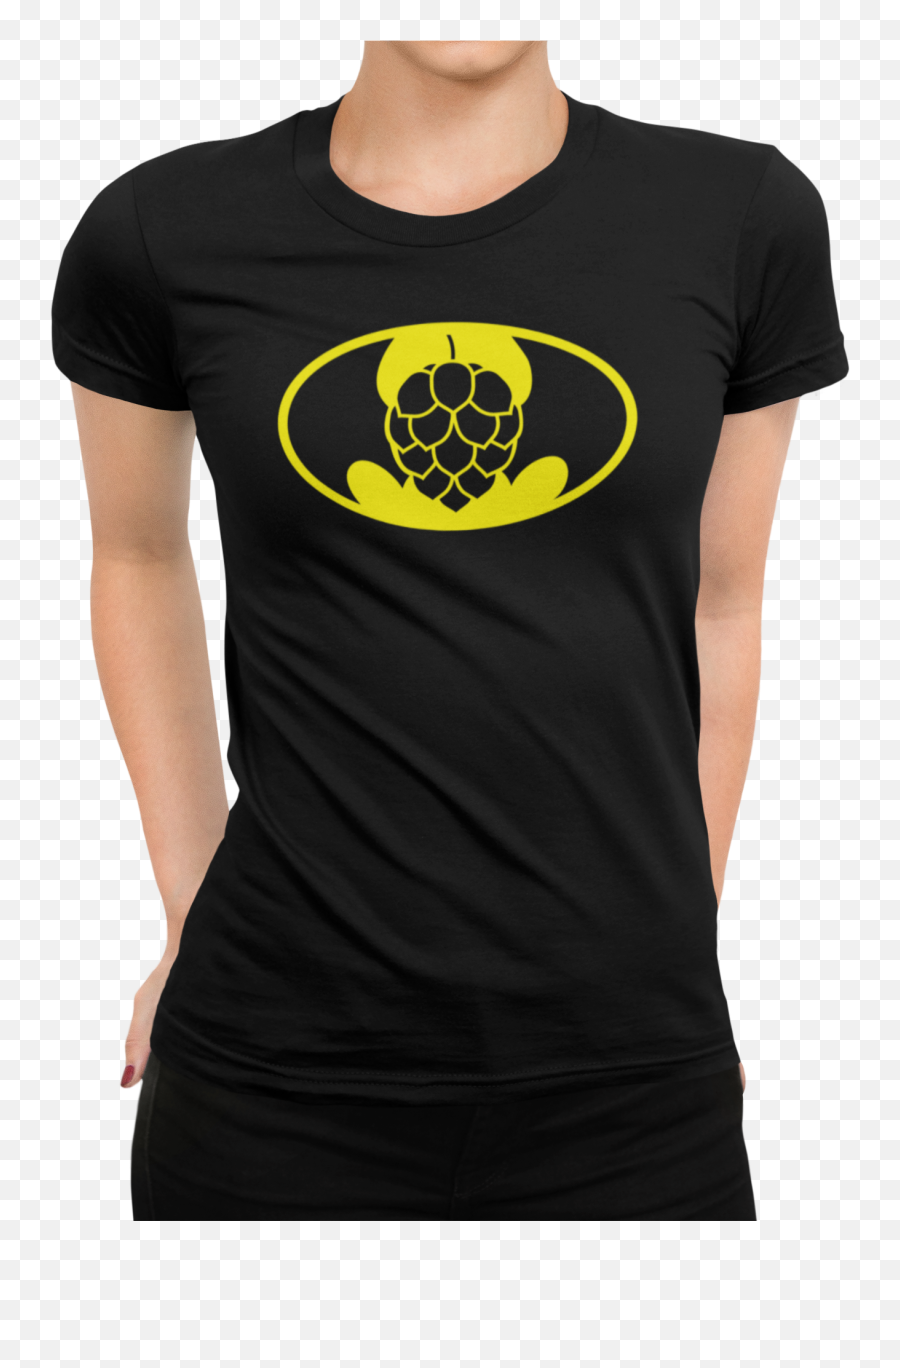 Bathop Symbol Beer Brewing T - Shirt Emoji,Emoticon For Beer